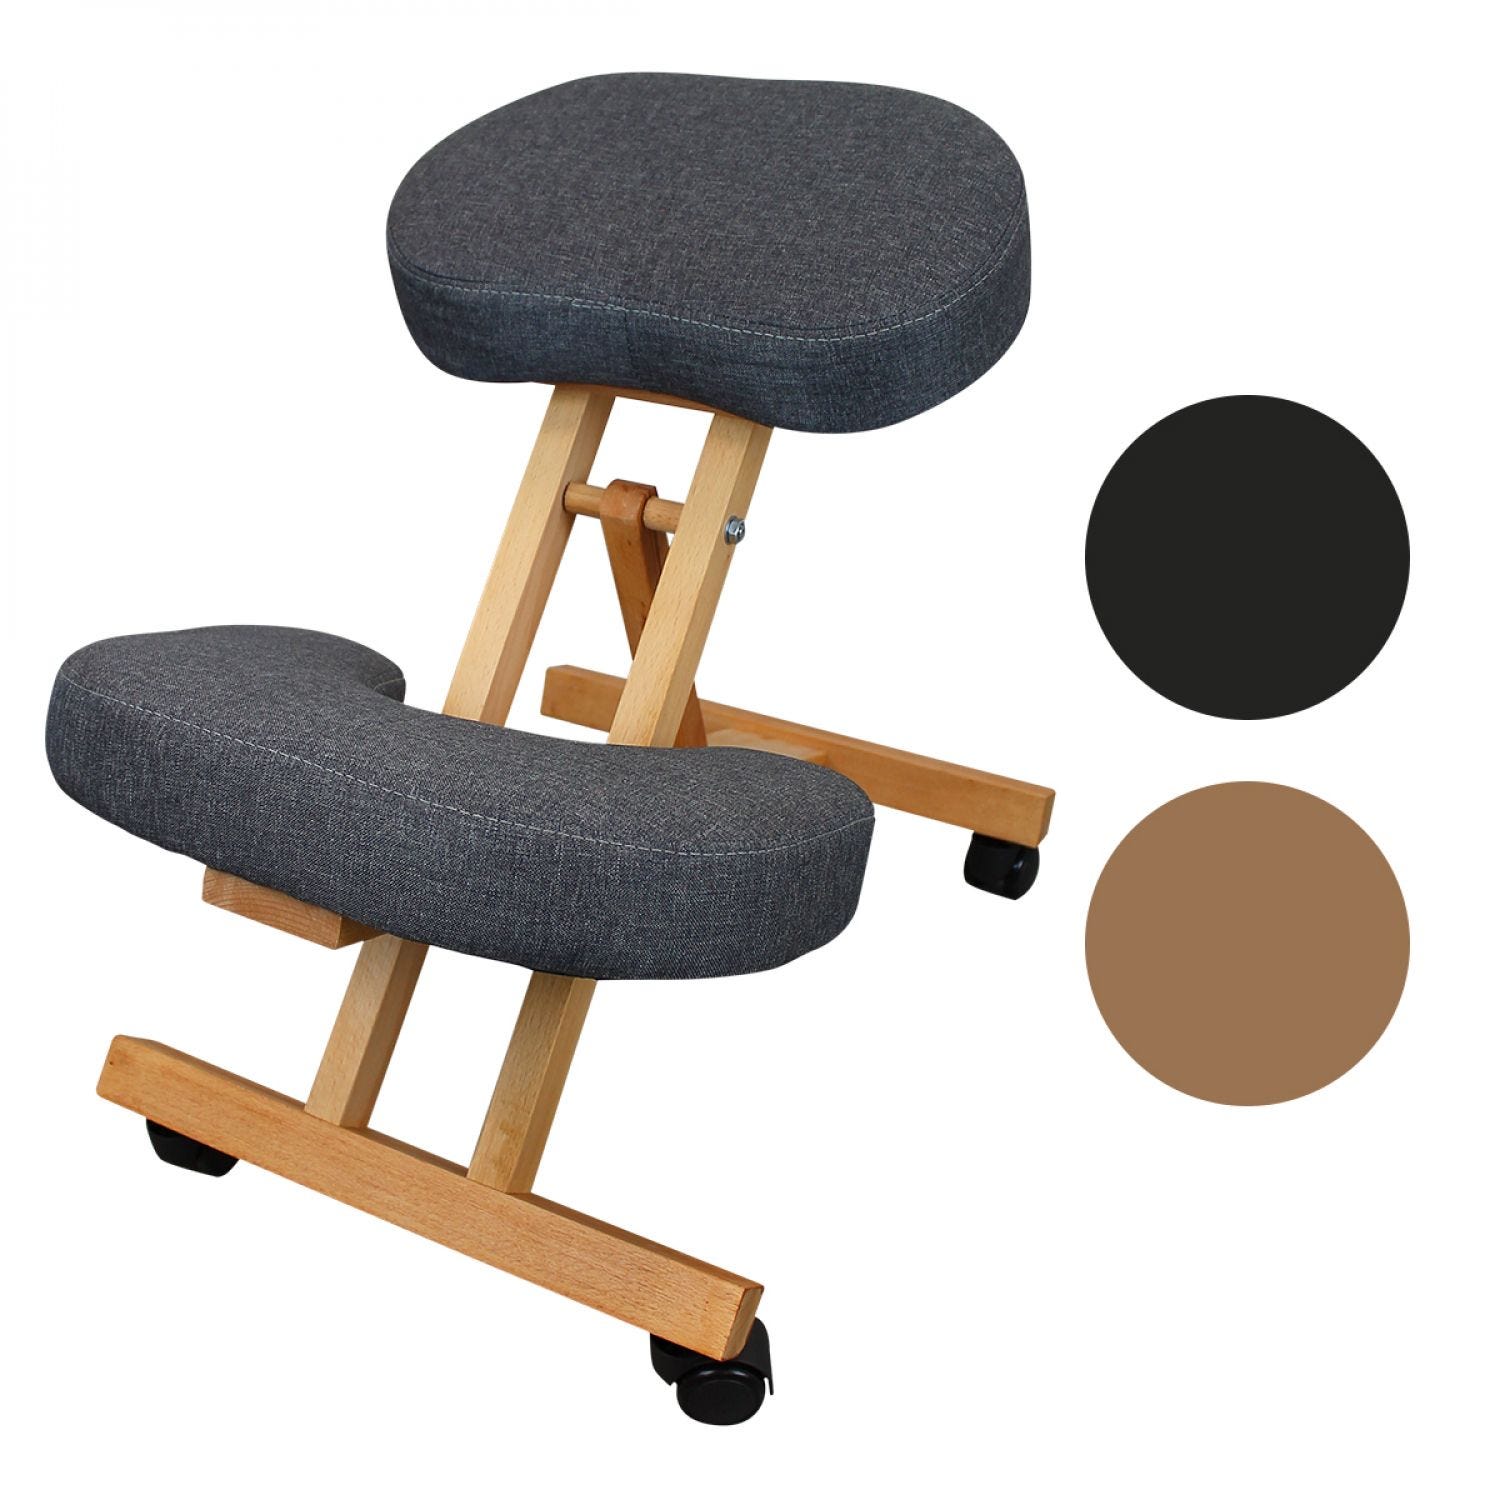 Tabouret, chaise ergonomique, siège assis genoux en bois pliable